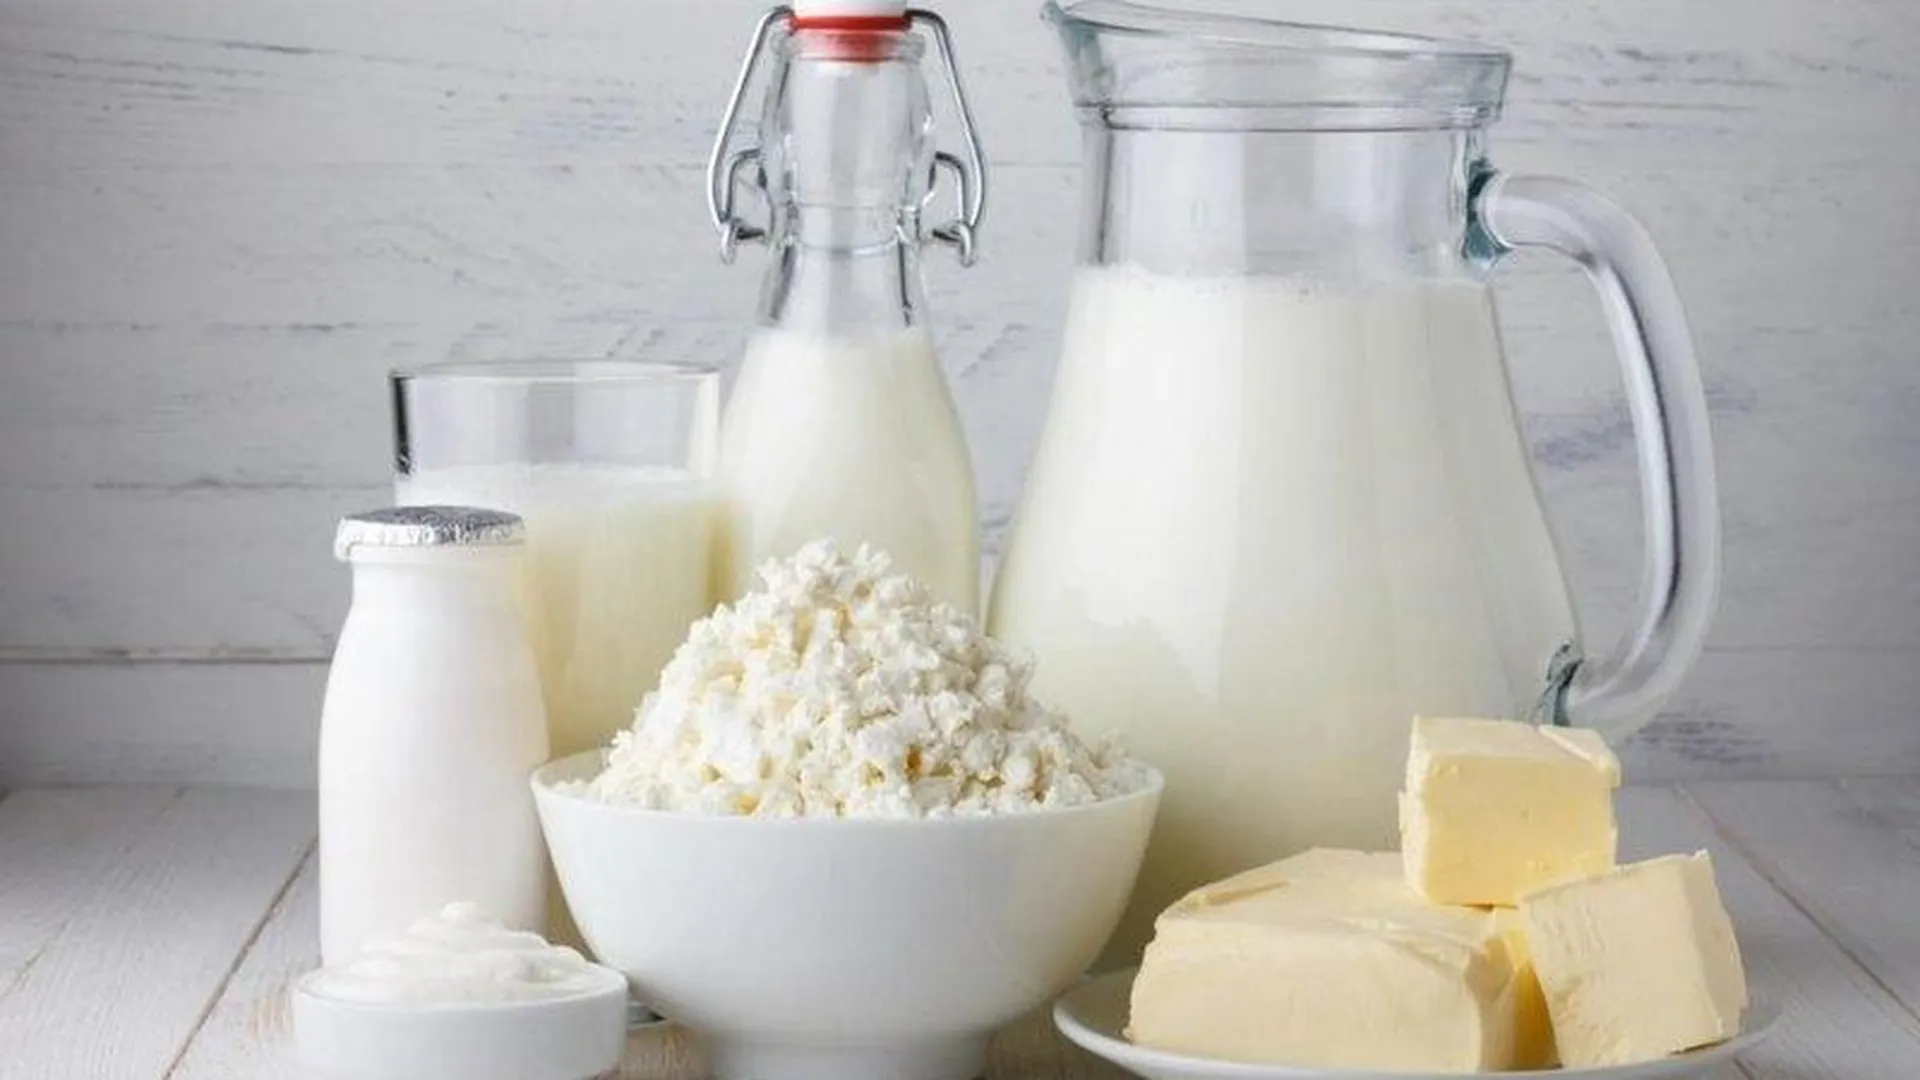 За качество ответили: подмосковные молочные продукты признаны лучшими